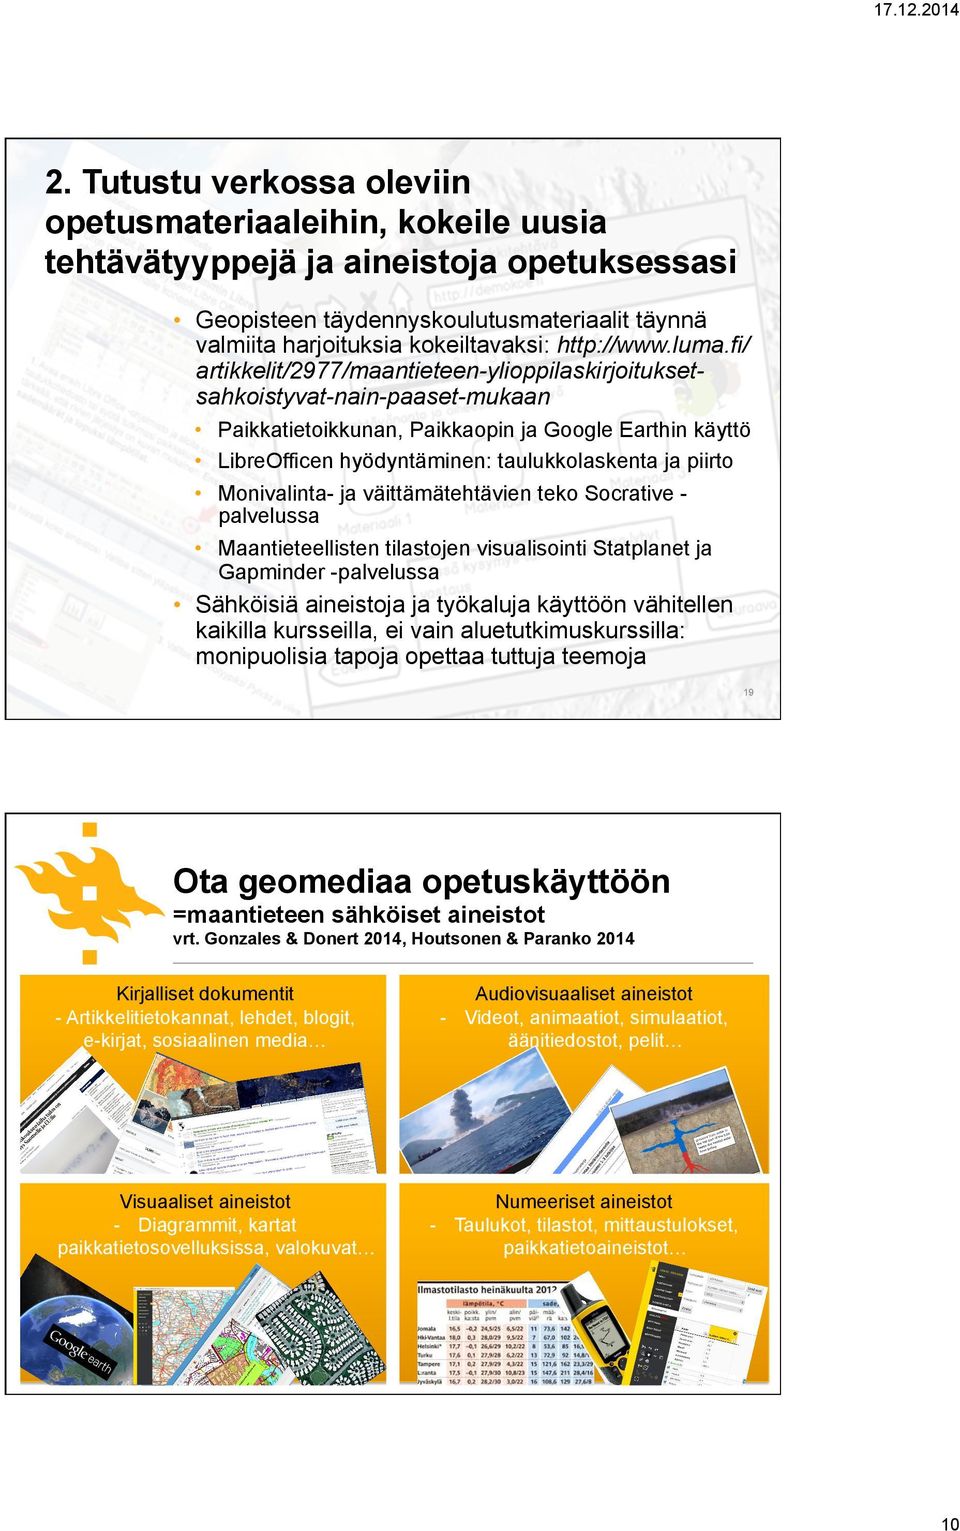 luma.fi/ artikkelit/2977/maantieteen-ylioppilaskirjoituksetsahkoistyvat-nain-paaset-mukaan Paikkatietoikkunan, Paikkaopin ja Google Earthin käyttö LibreOfficen hyödyntäminen: taulukkolaskenta ja